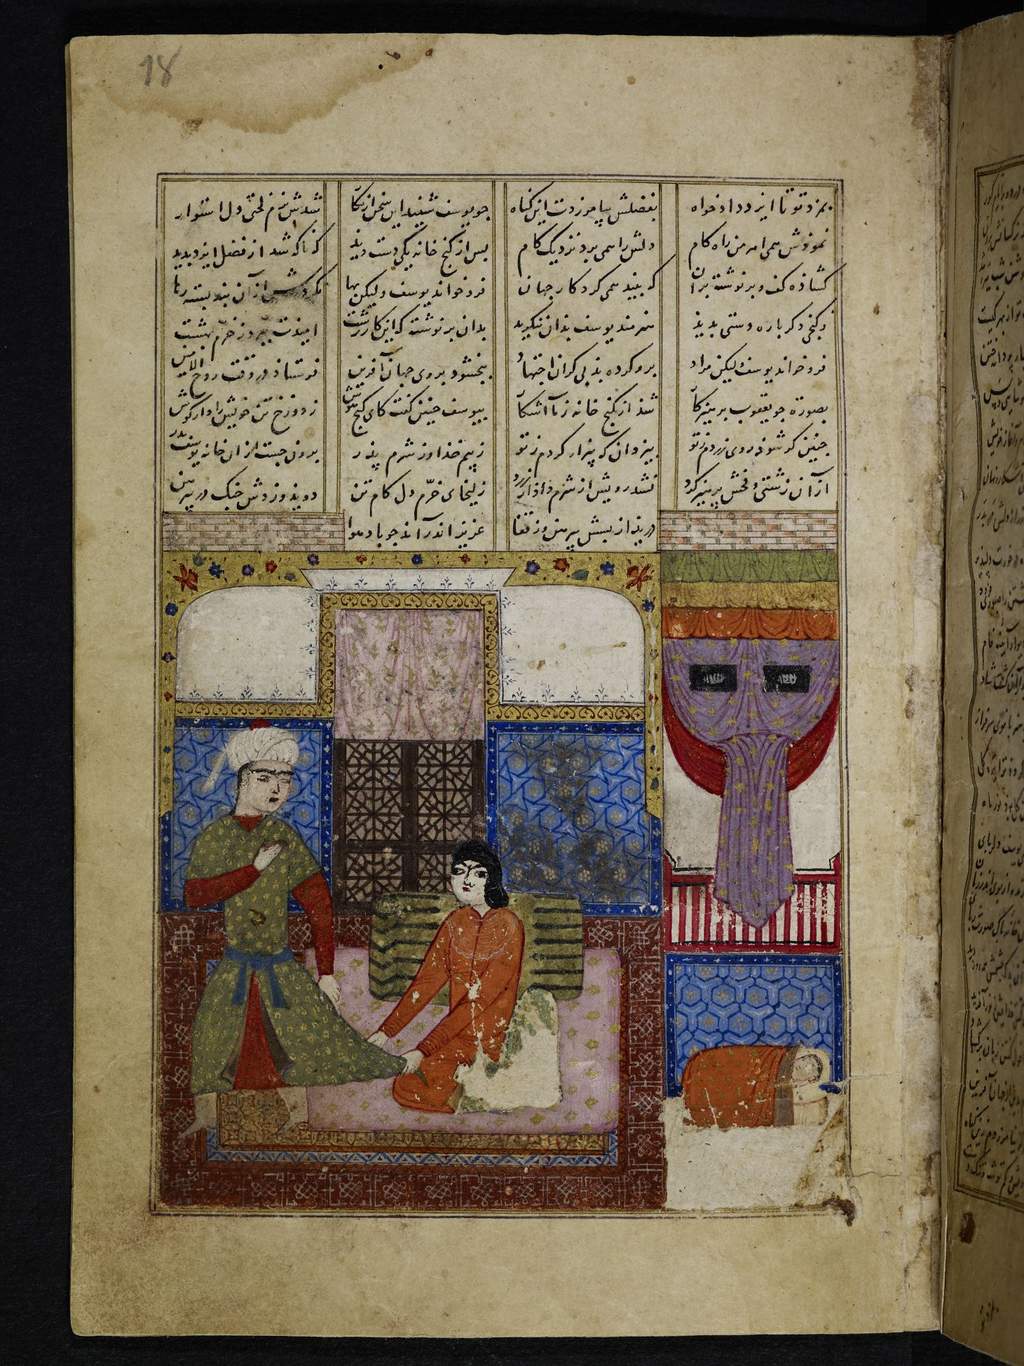 Josephs Verführung aus einem Manuskript von Amanis "Yusuf u Zulaikha" (Iran, 1416); Quelle: © Staatsbibliothek zu Berlin, Preußischer Kulturbesitz / Fotostelle